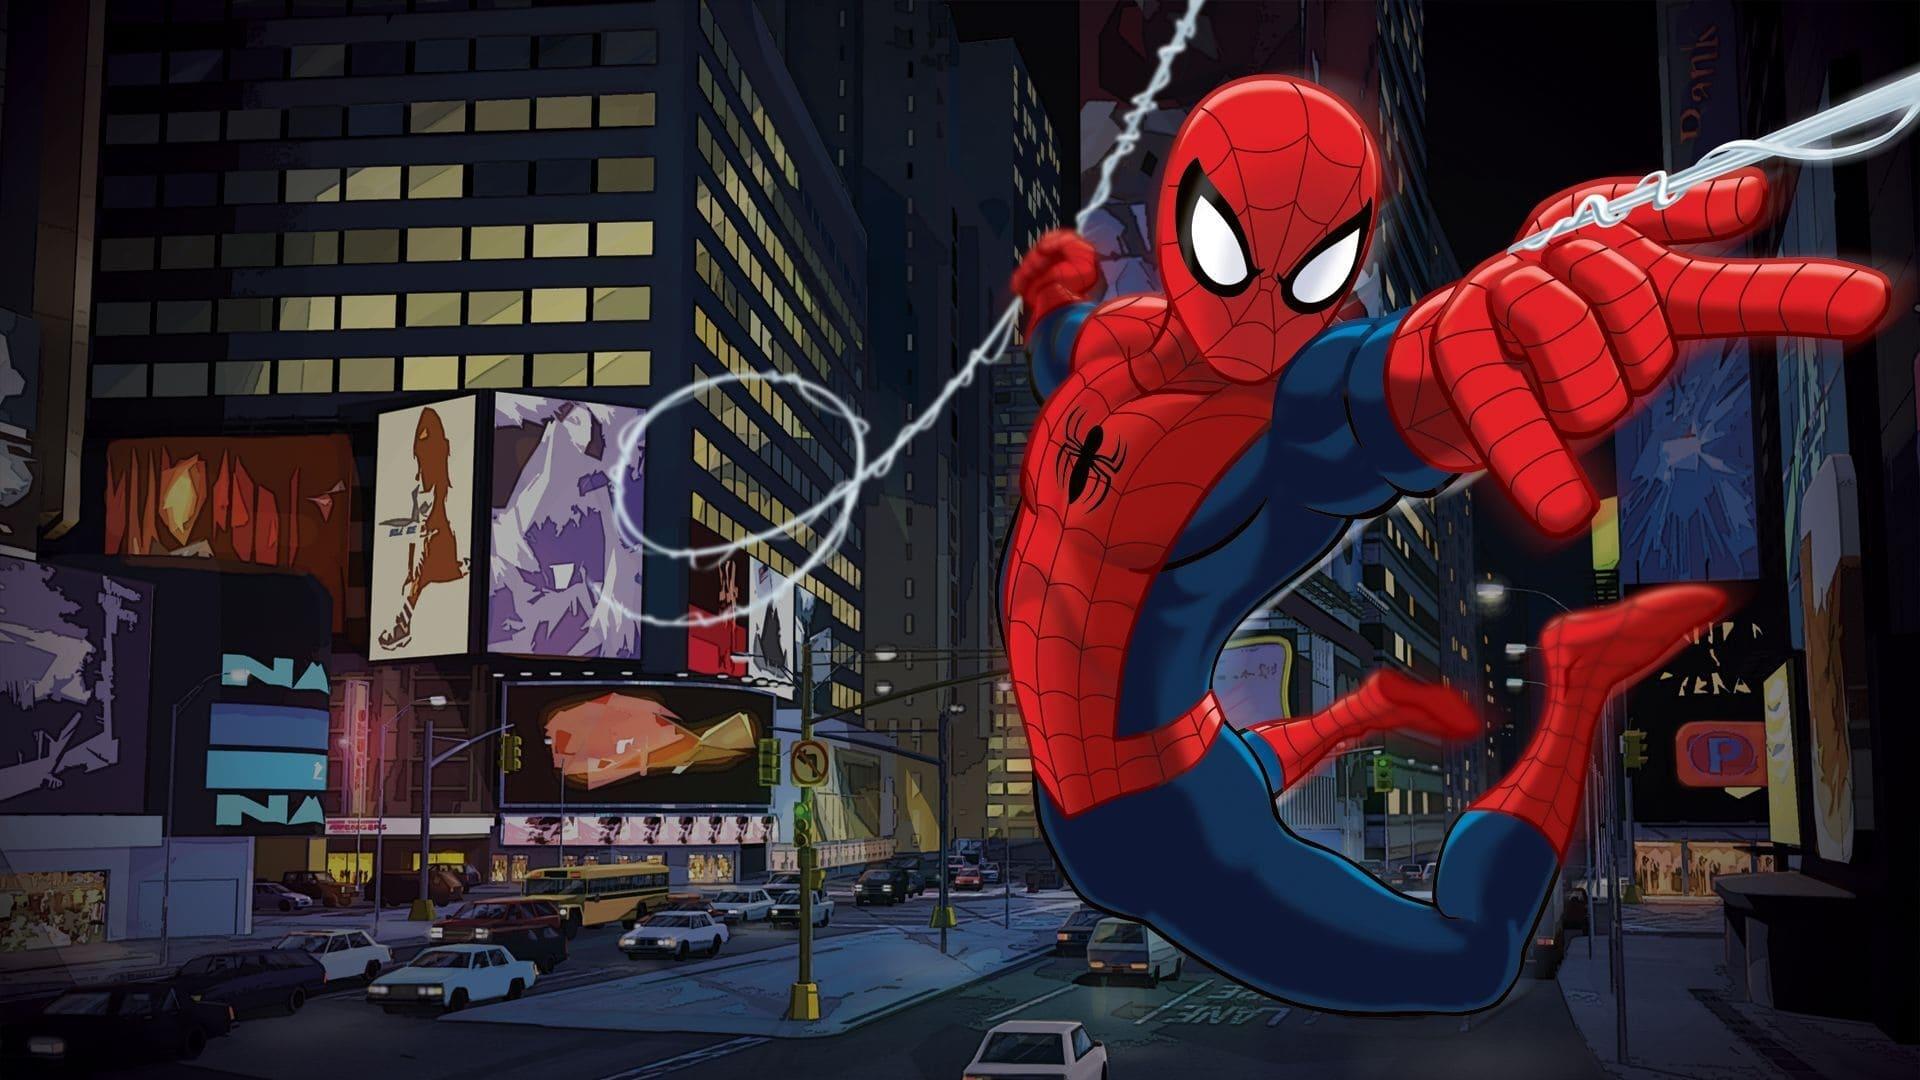 Marvel's Ultimate Spider-Man backdrop